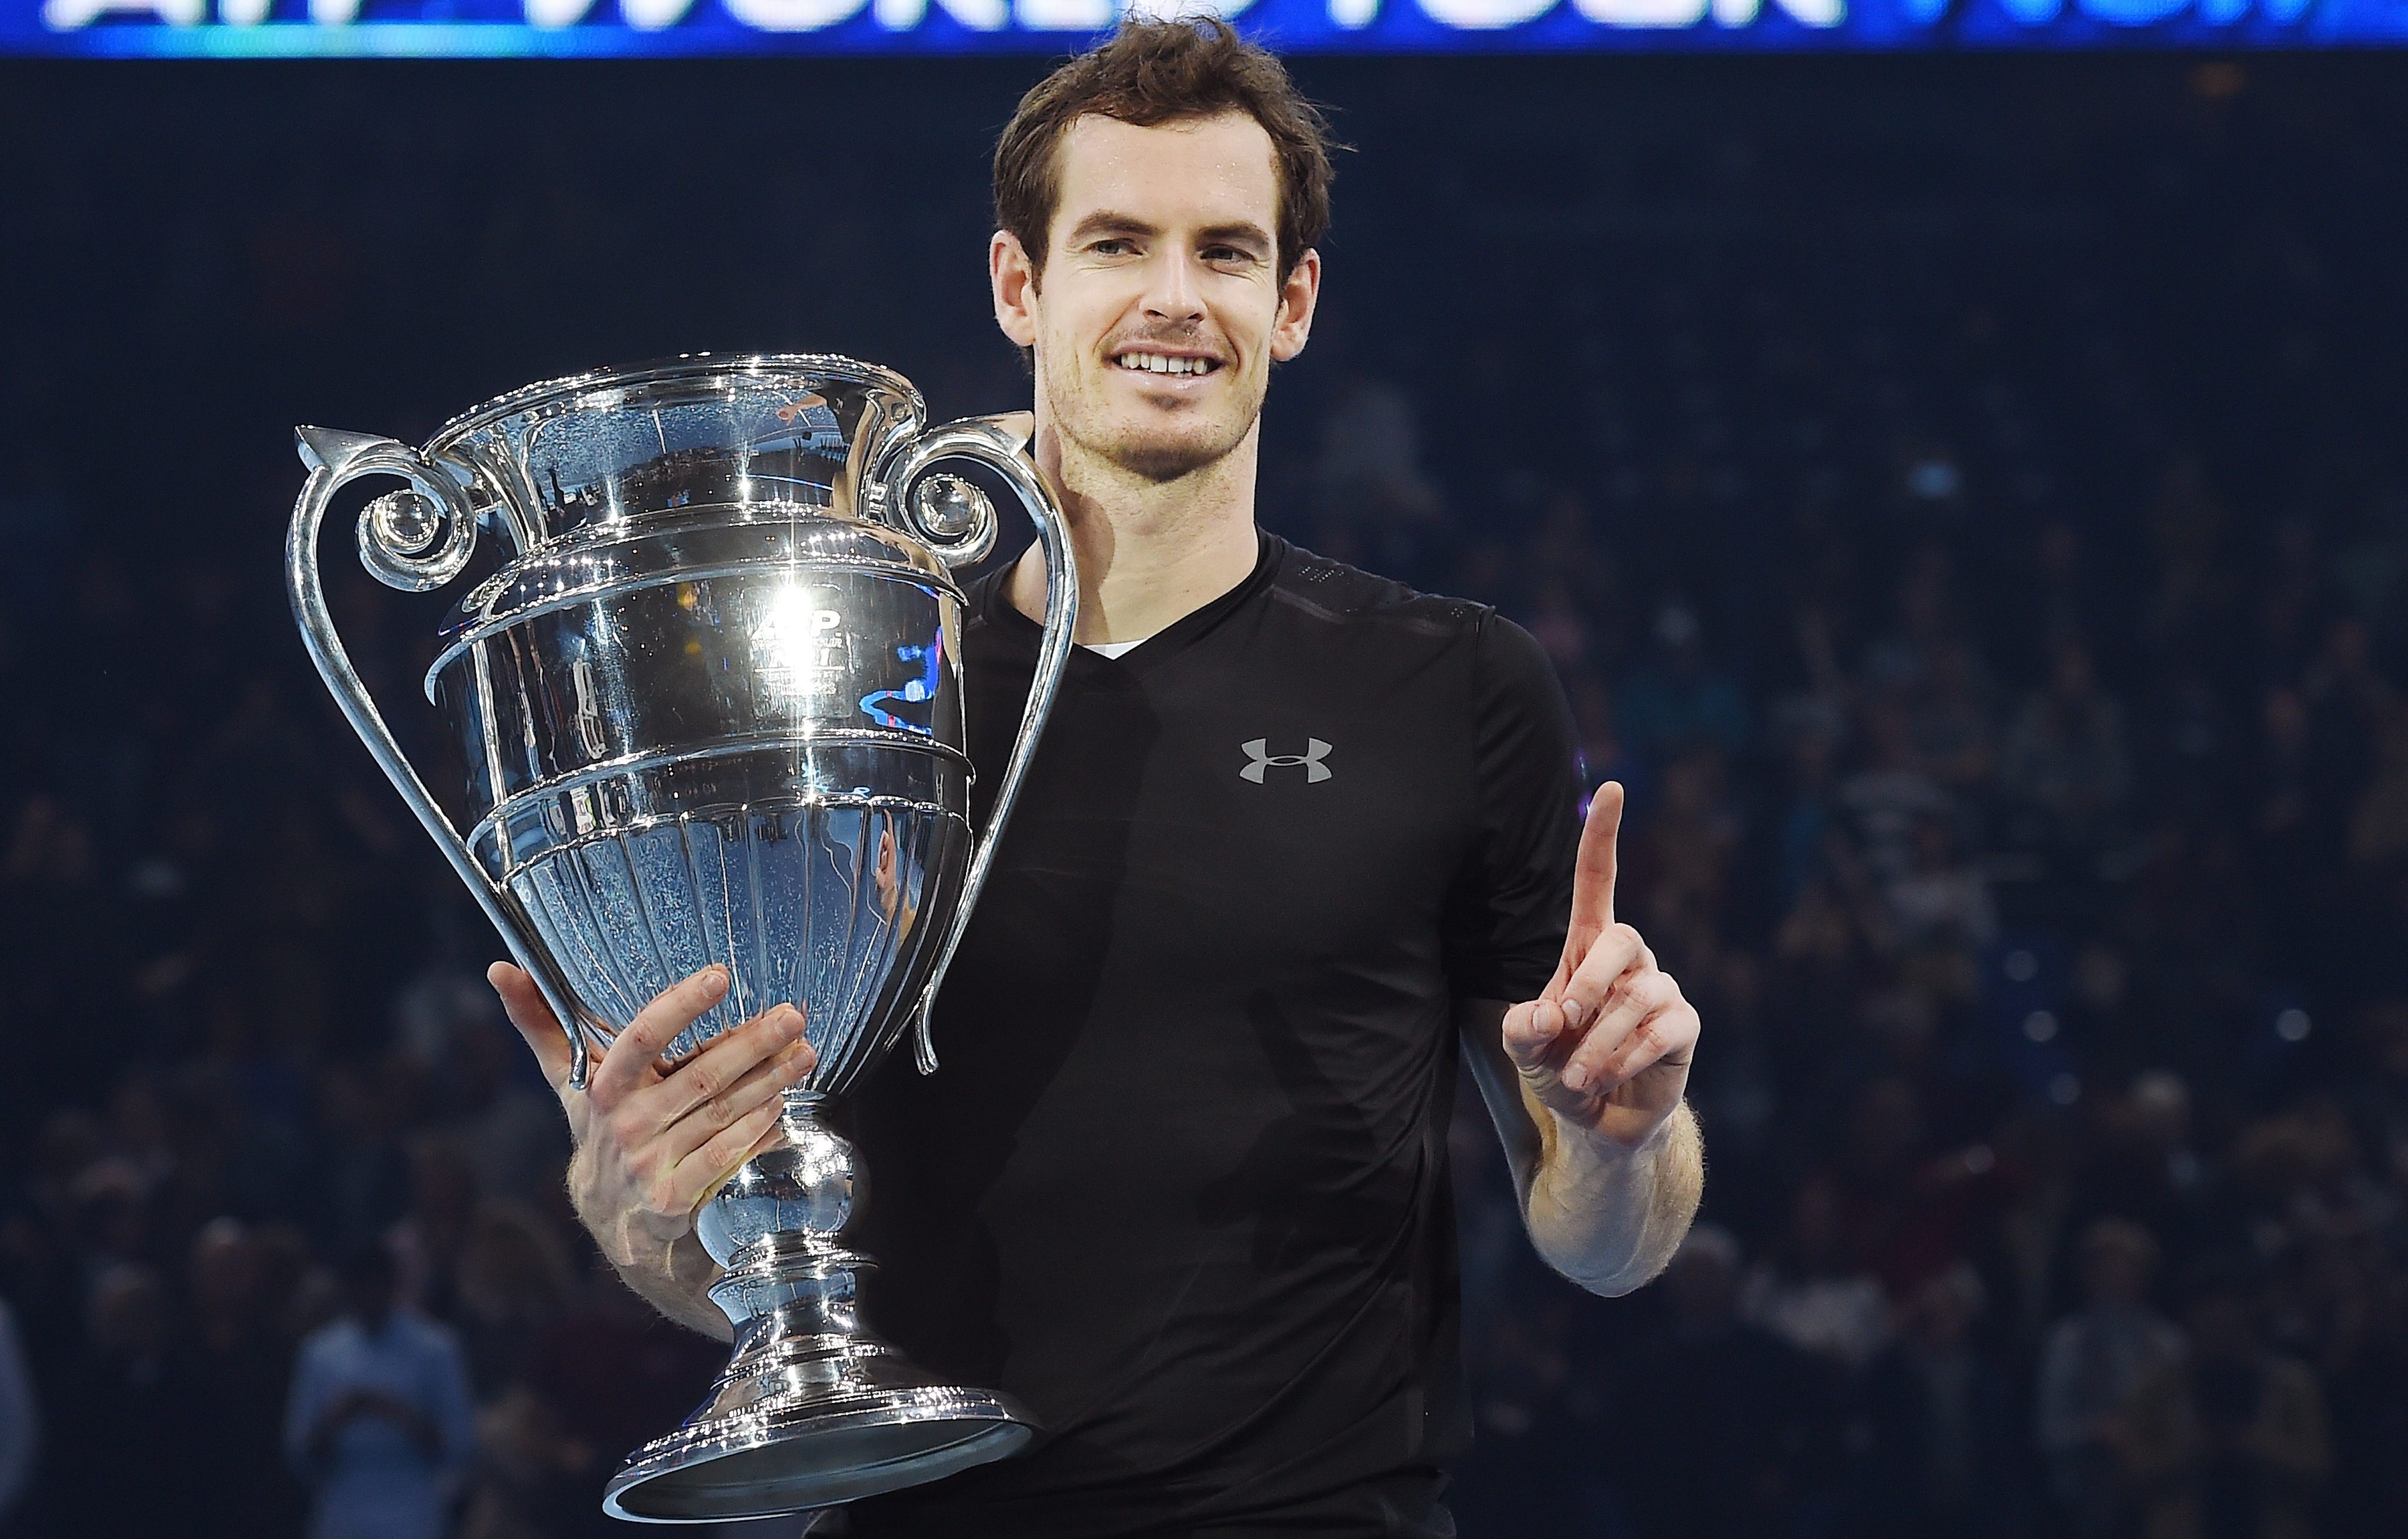 Murray tumba a Djokovic y se convierte en el nuevo maestro del tenis mundial - Libertad Digital